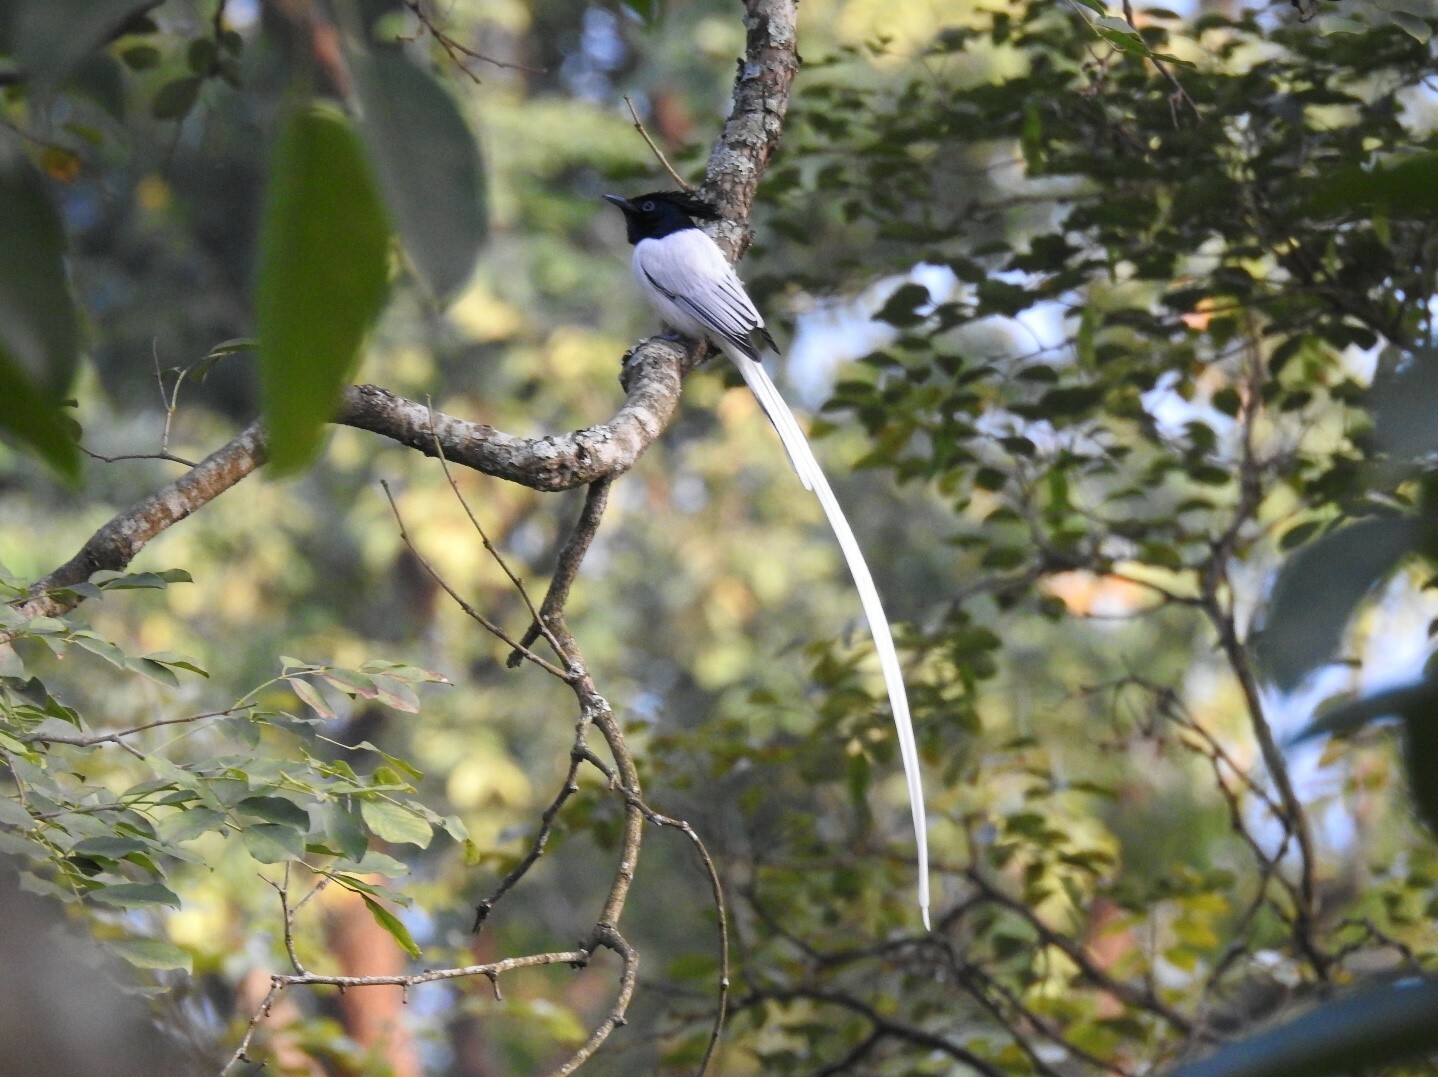 Viele Vögel, wie dieser indische Paradiesschnäpper (Terpsiphone paradisi), der sich von Insekten ernährt, würden in einer städtischen Umgebung nicht gedeihen.